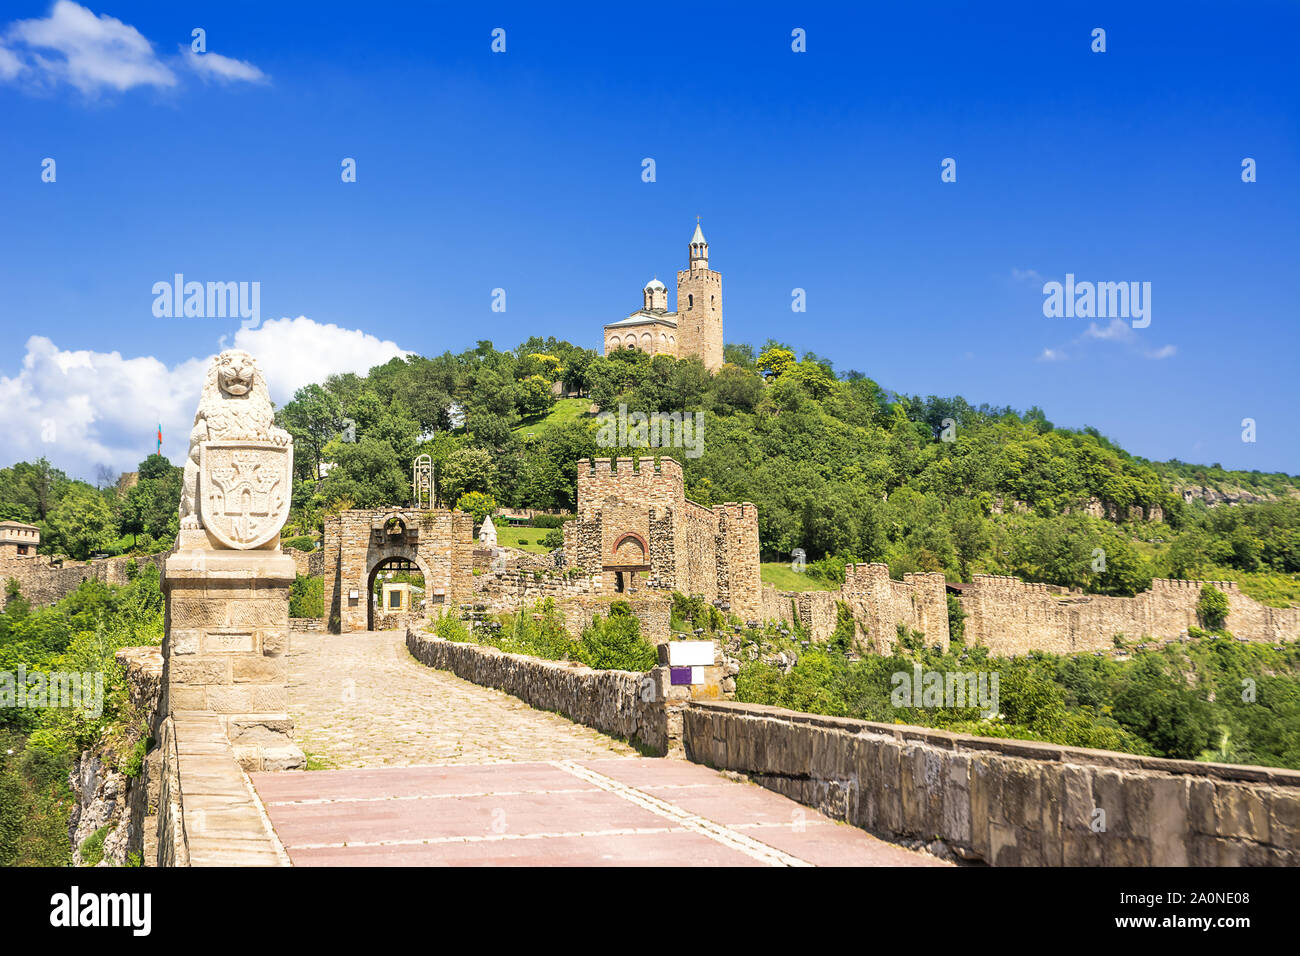 Entrance road of entrance of Tsarevets Fortress in Veliko Tarnovo in Bulgaria Stock Photo